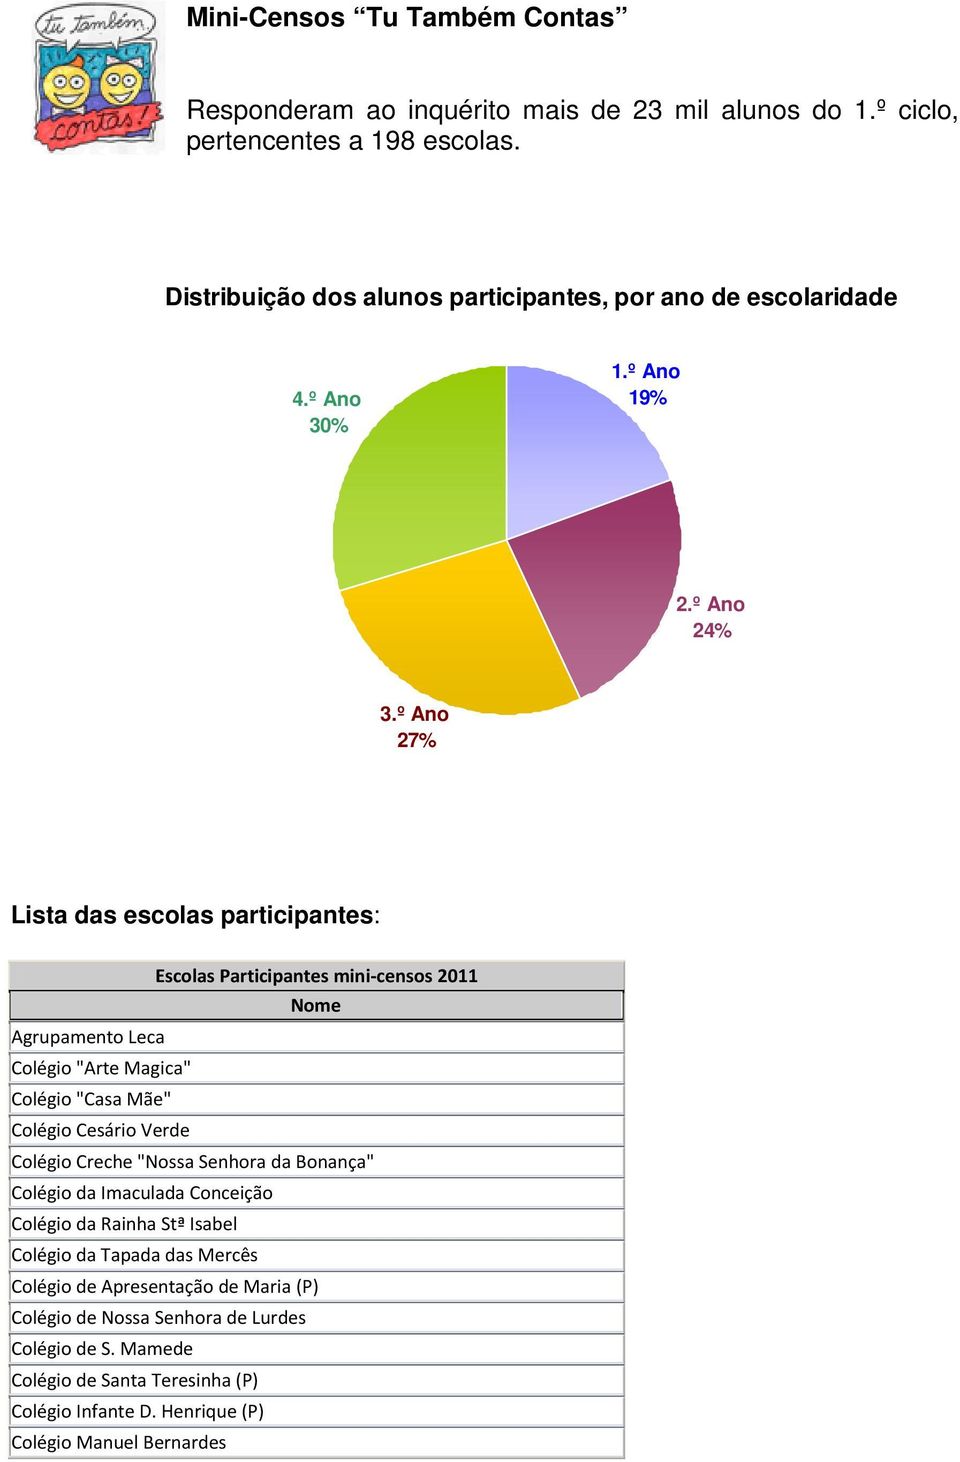 º Ano 27% Lista das escolas participantes: Escolas Participantes mini-censos 2011 Agrupamento Leca Colégio "Arte Magica" Colégio "Casa Mãe" Colégio Cesário Verde Colégio